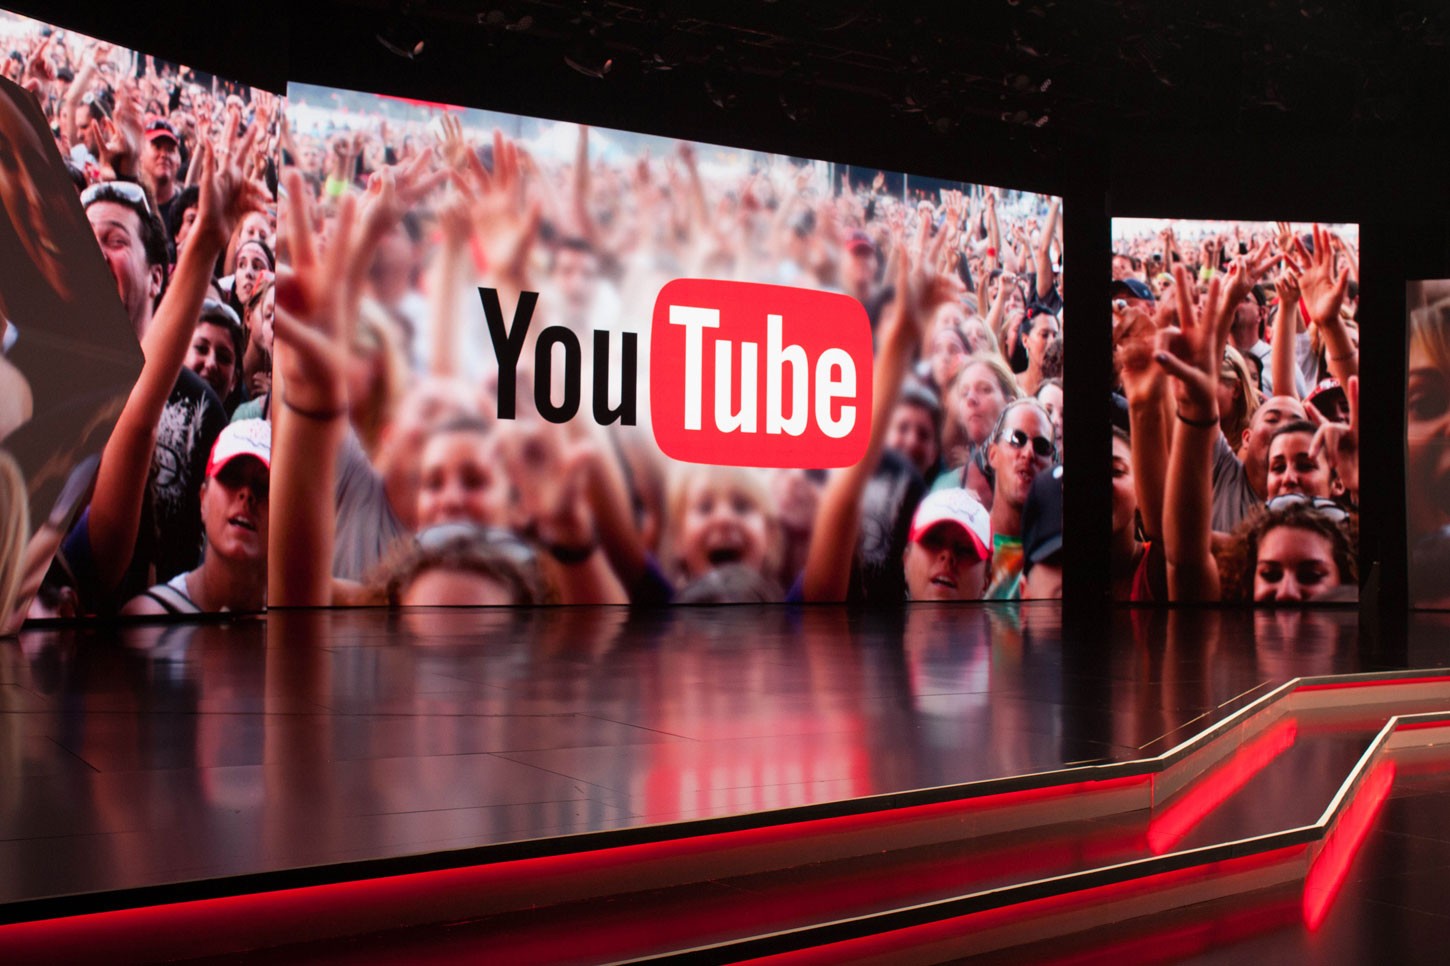 “يوتيوب” يبدأ “ثورة” جديدة لاستقطاب مؤثري ورُواد العالم الافتراضي